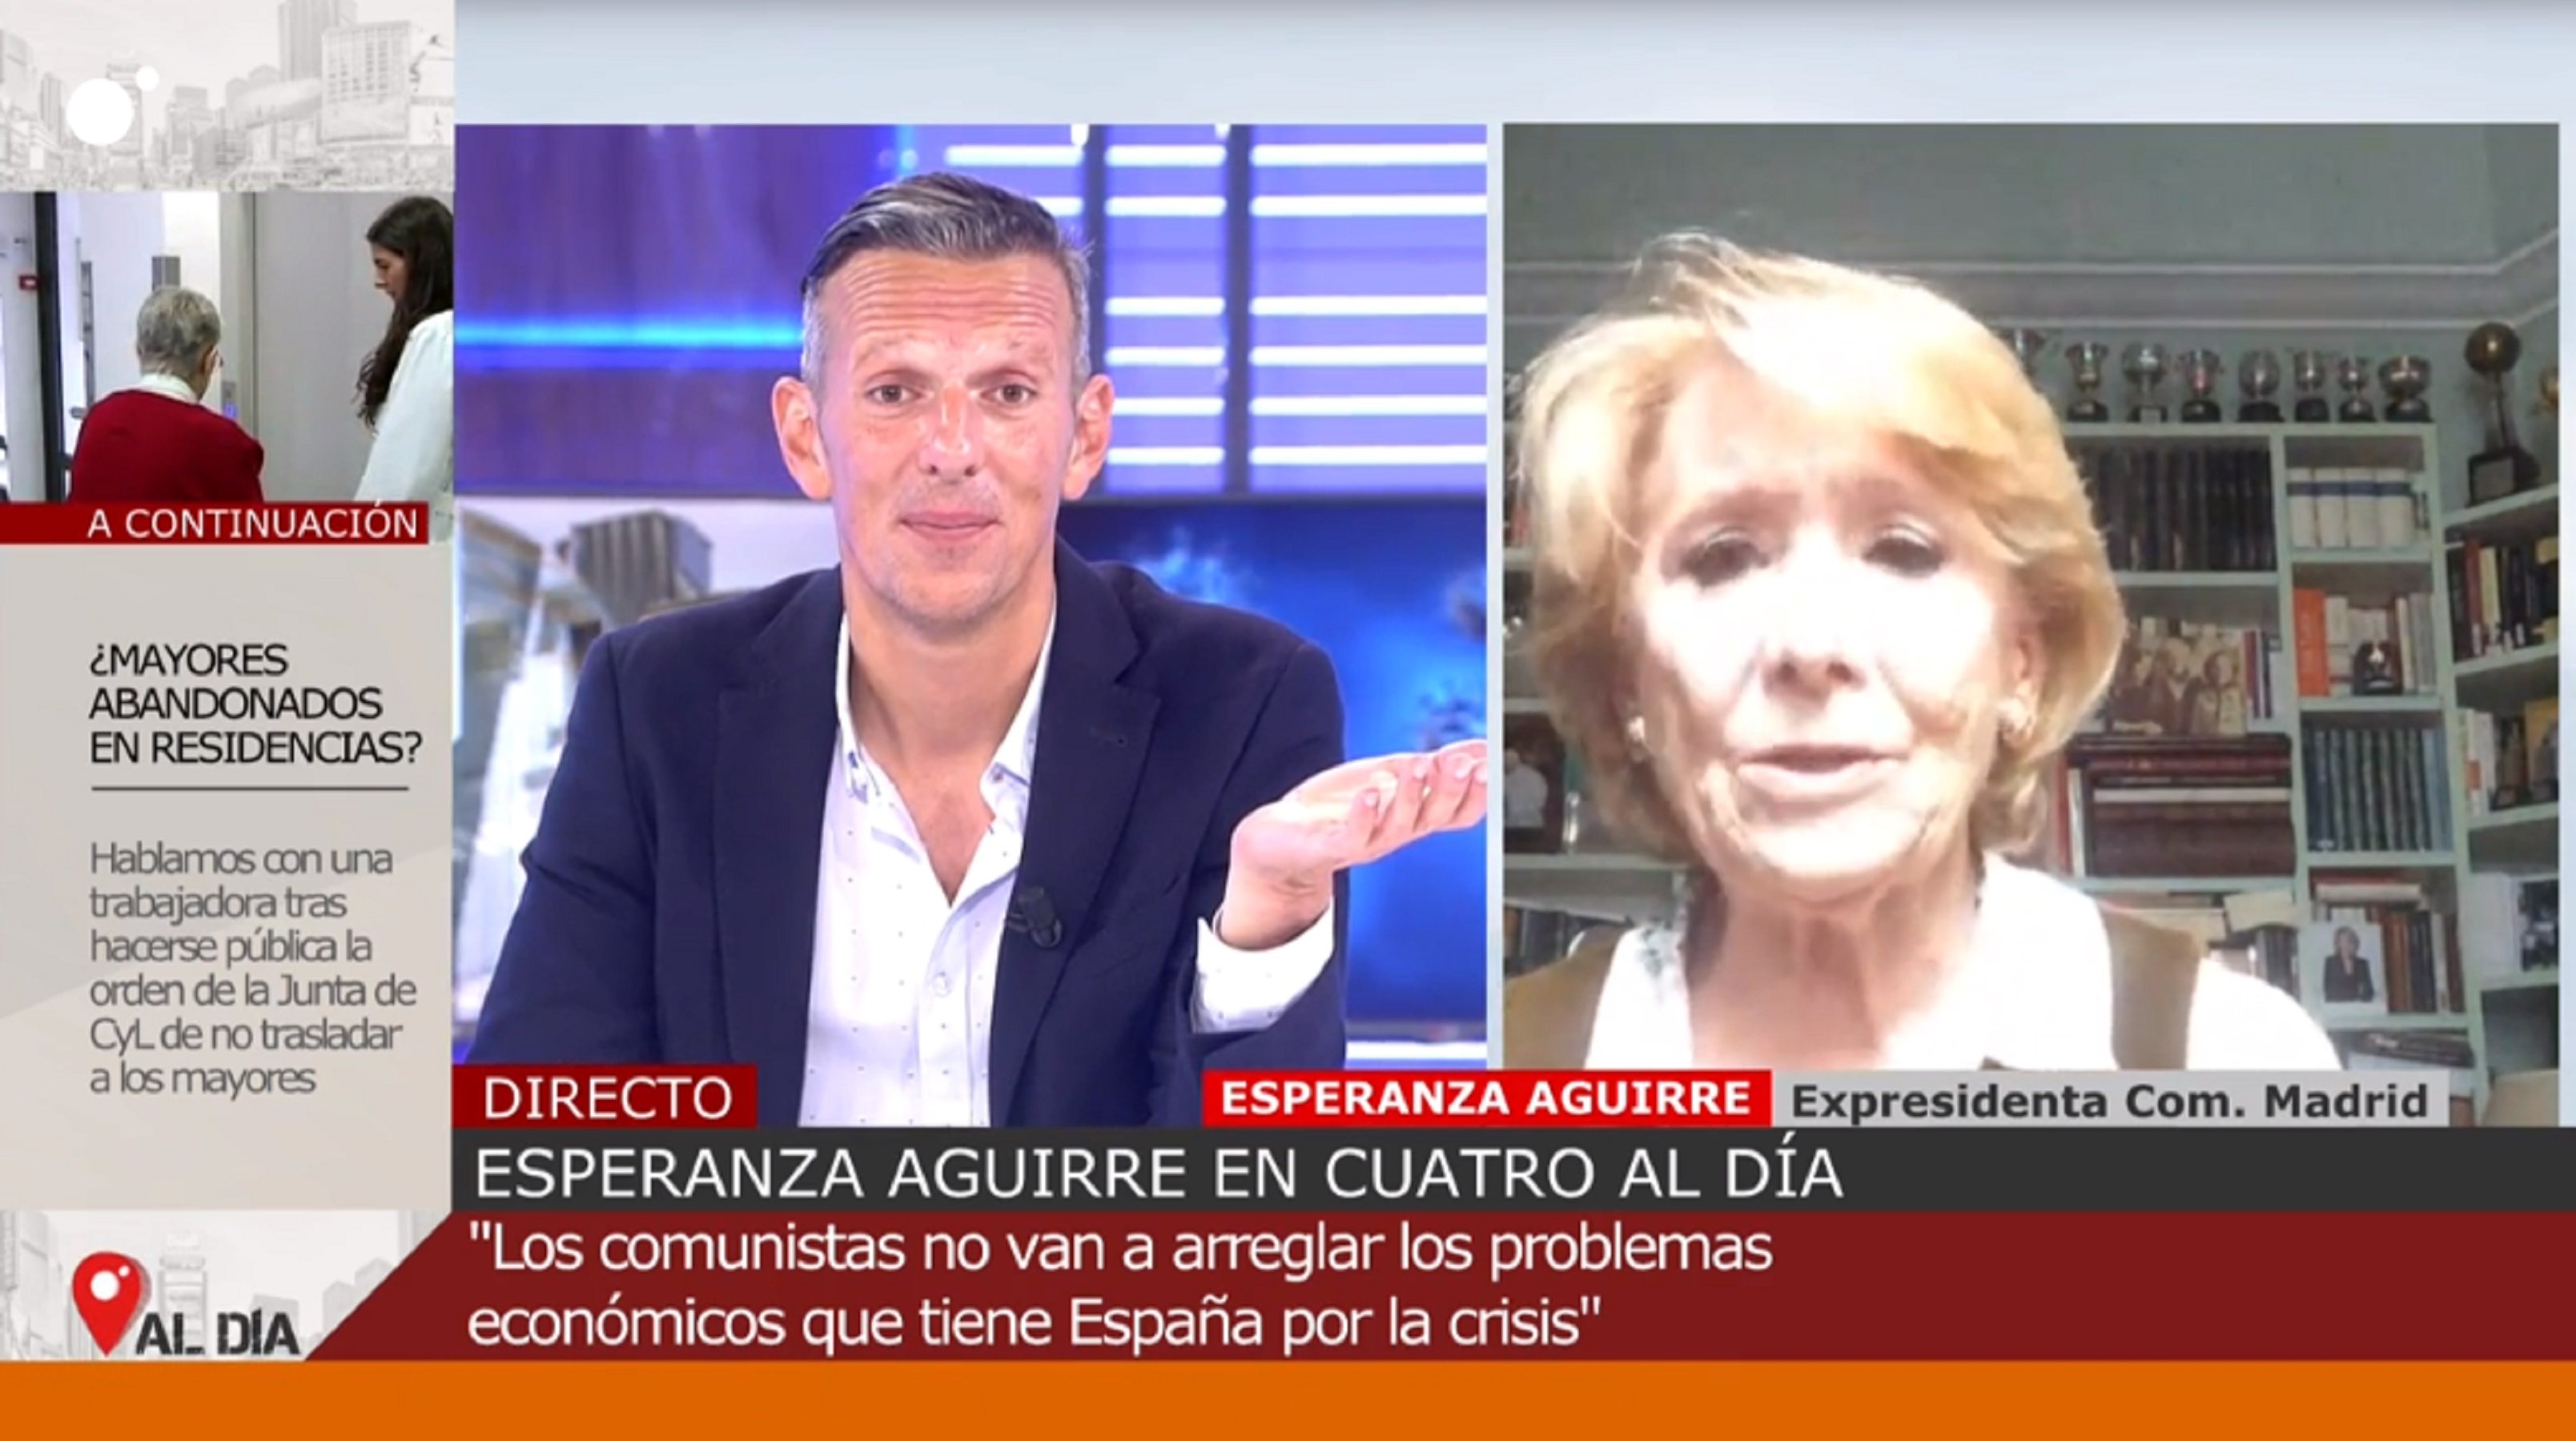 Cabreig d'Esperanza Aguirre a la televisió: "¡Esos datos son falsos!"